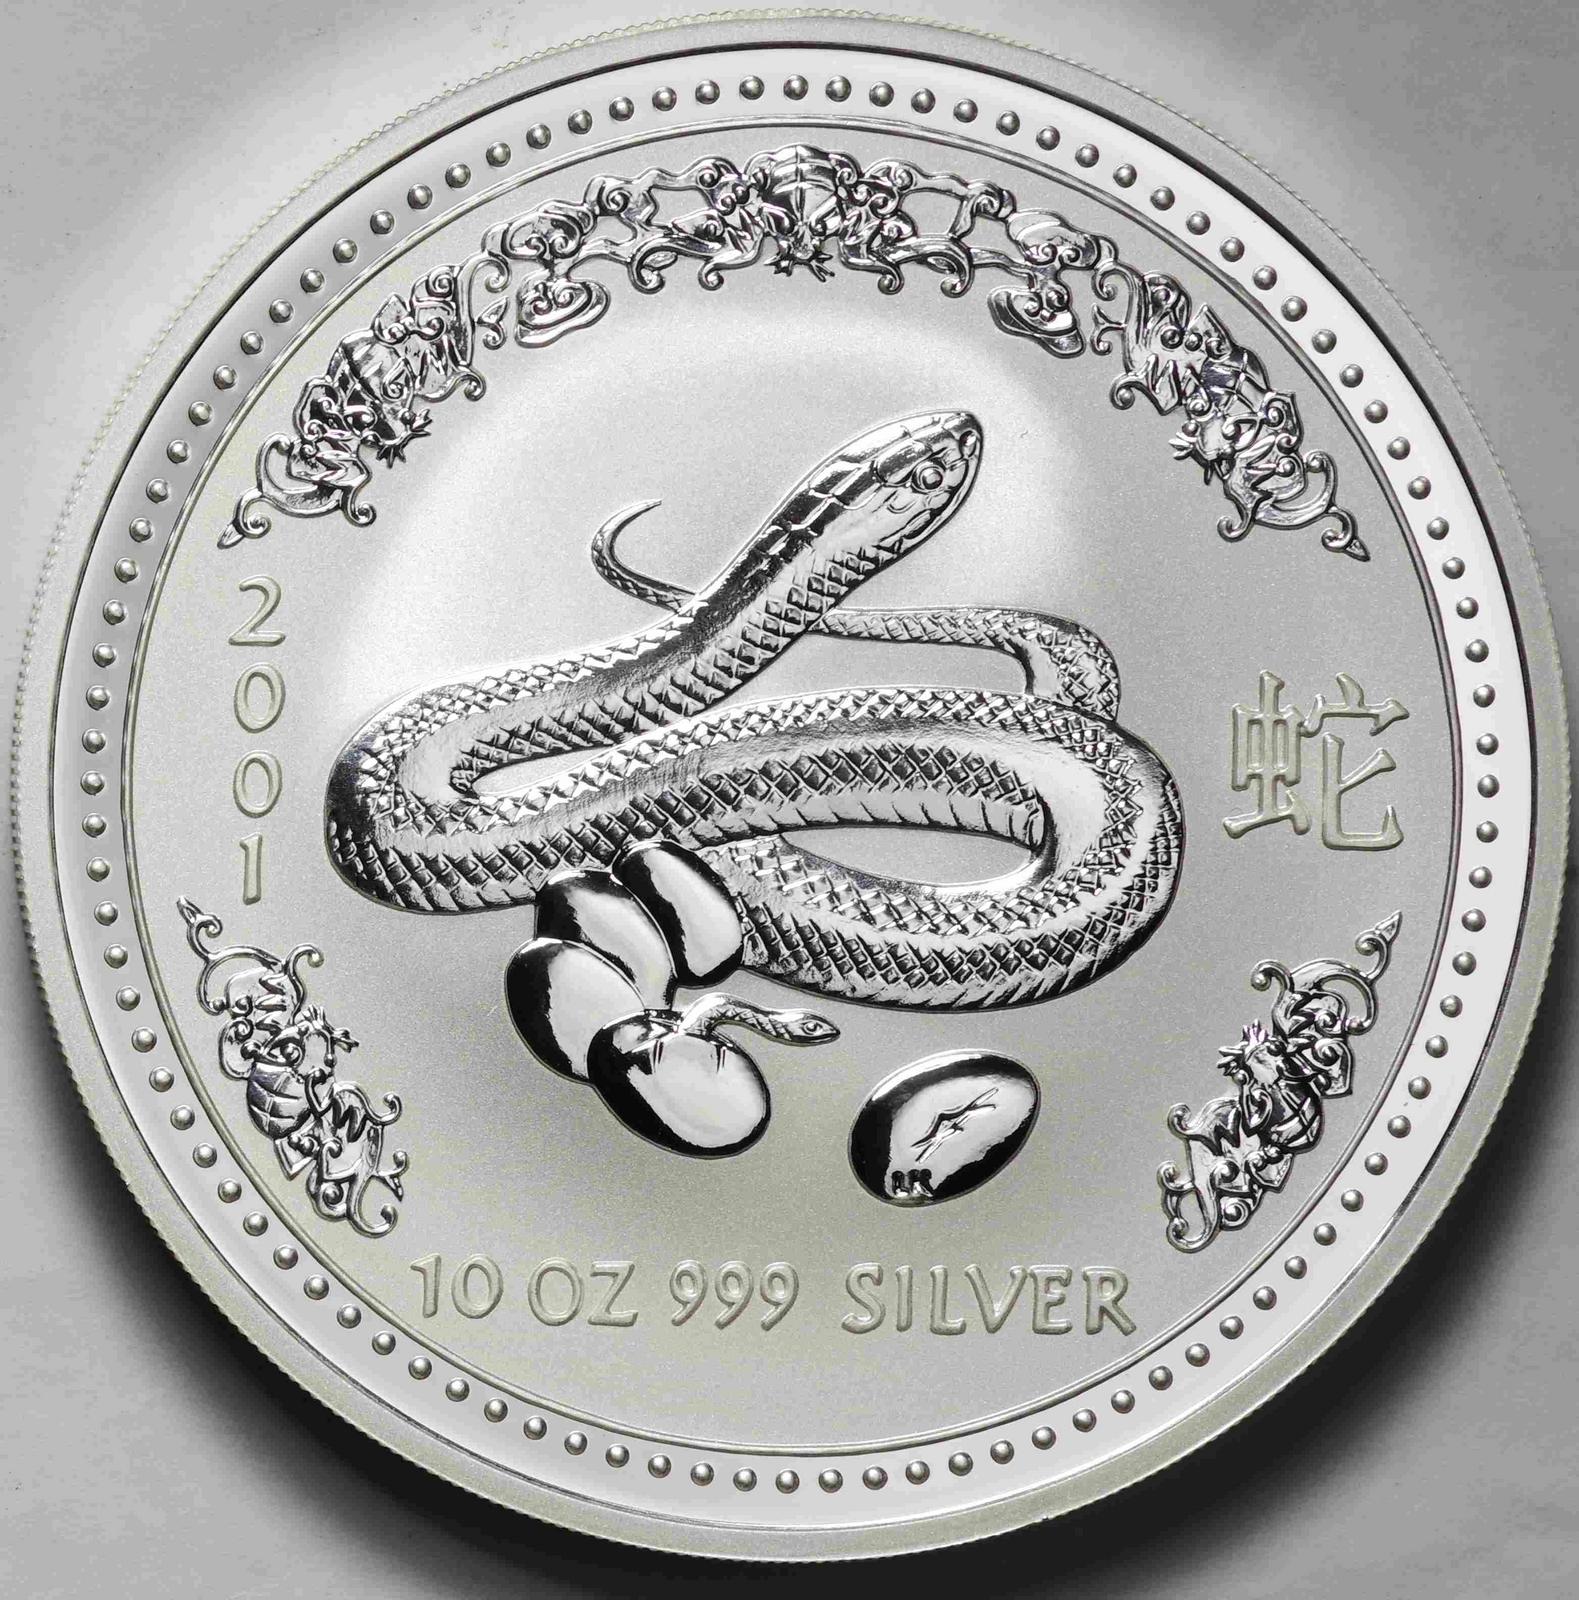 【未使用品】ワライカワセミ 2001年 10ドル大型銀貨 10oz